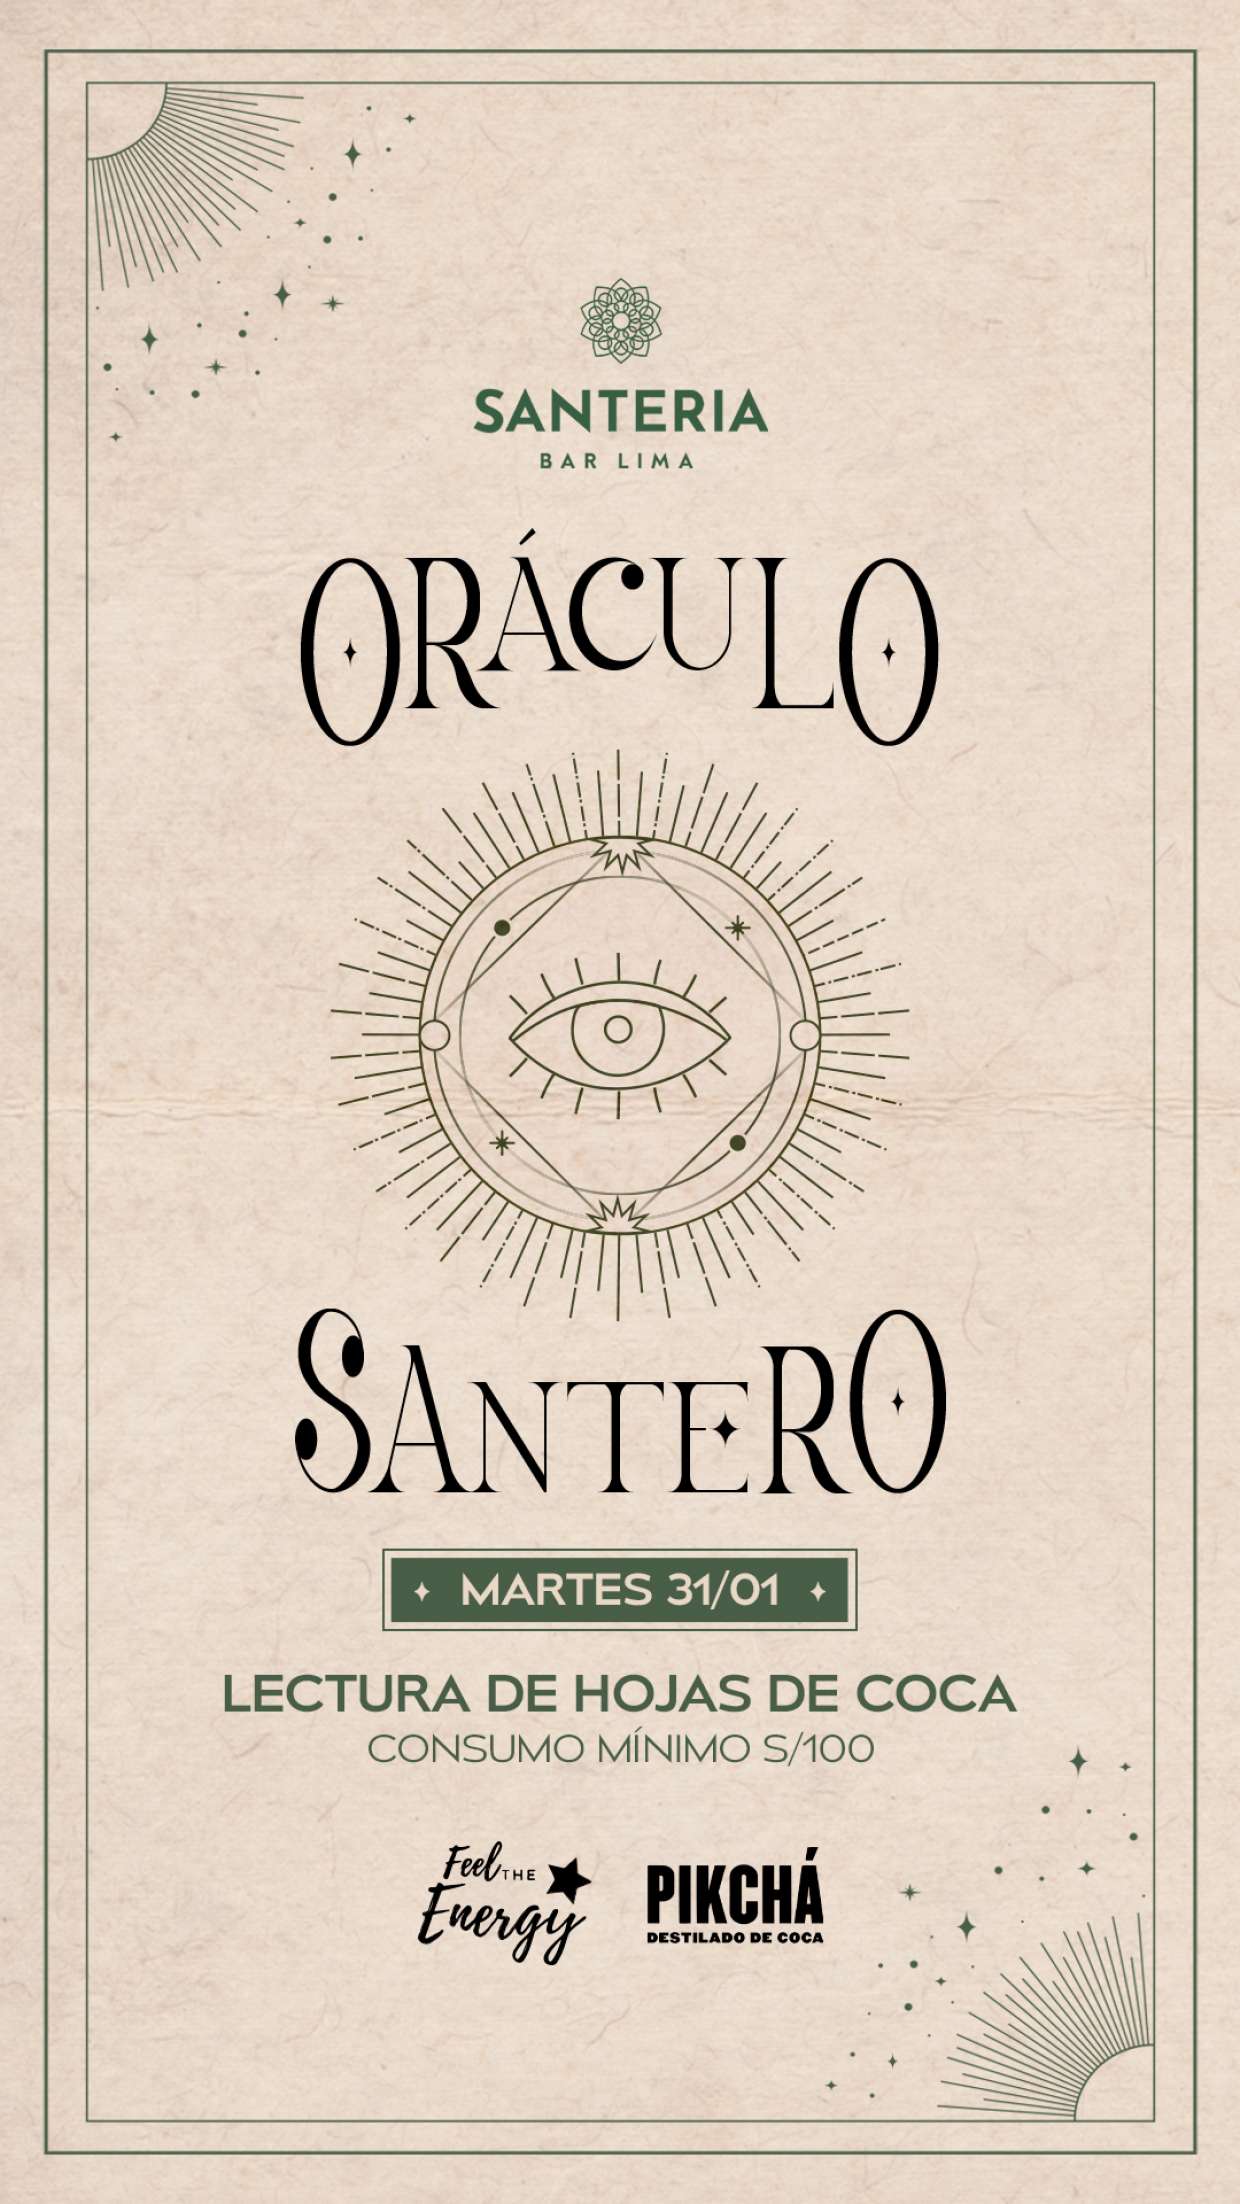 Oraculo Santero-Lectura de hojas de coca